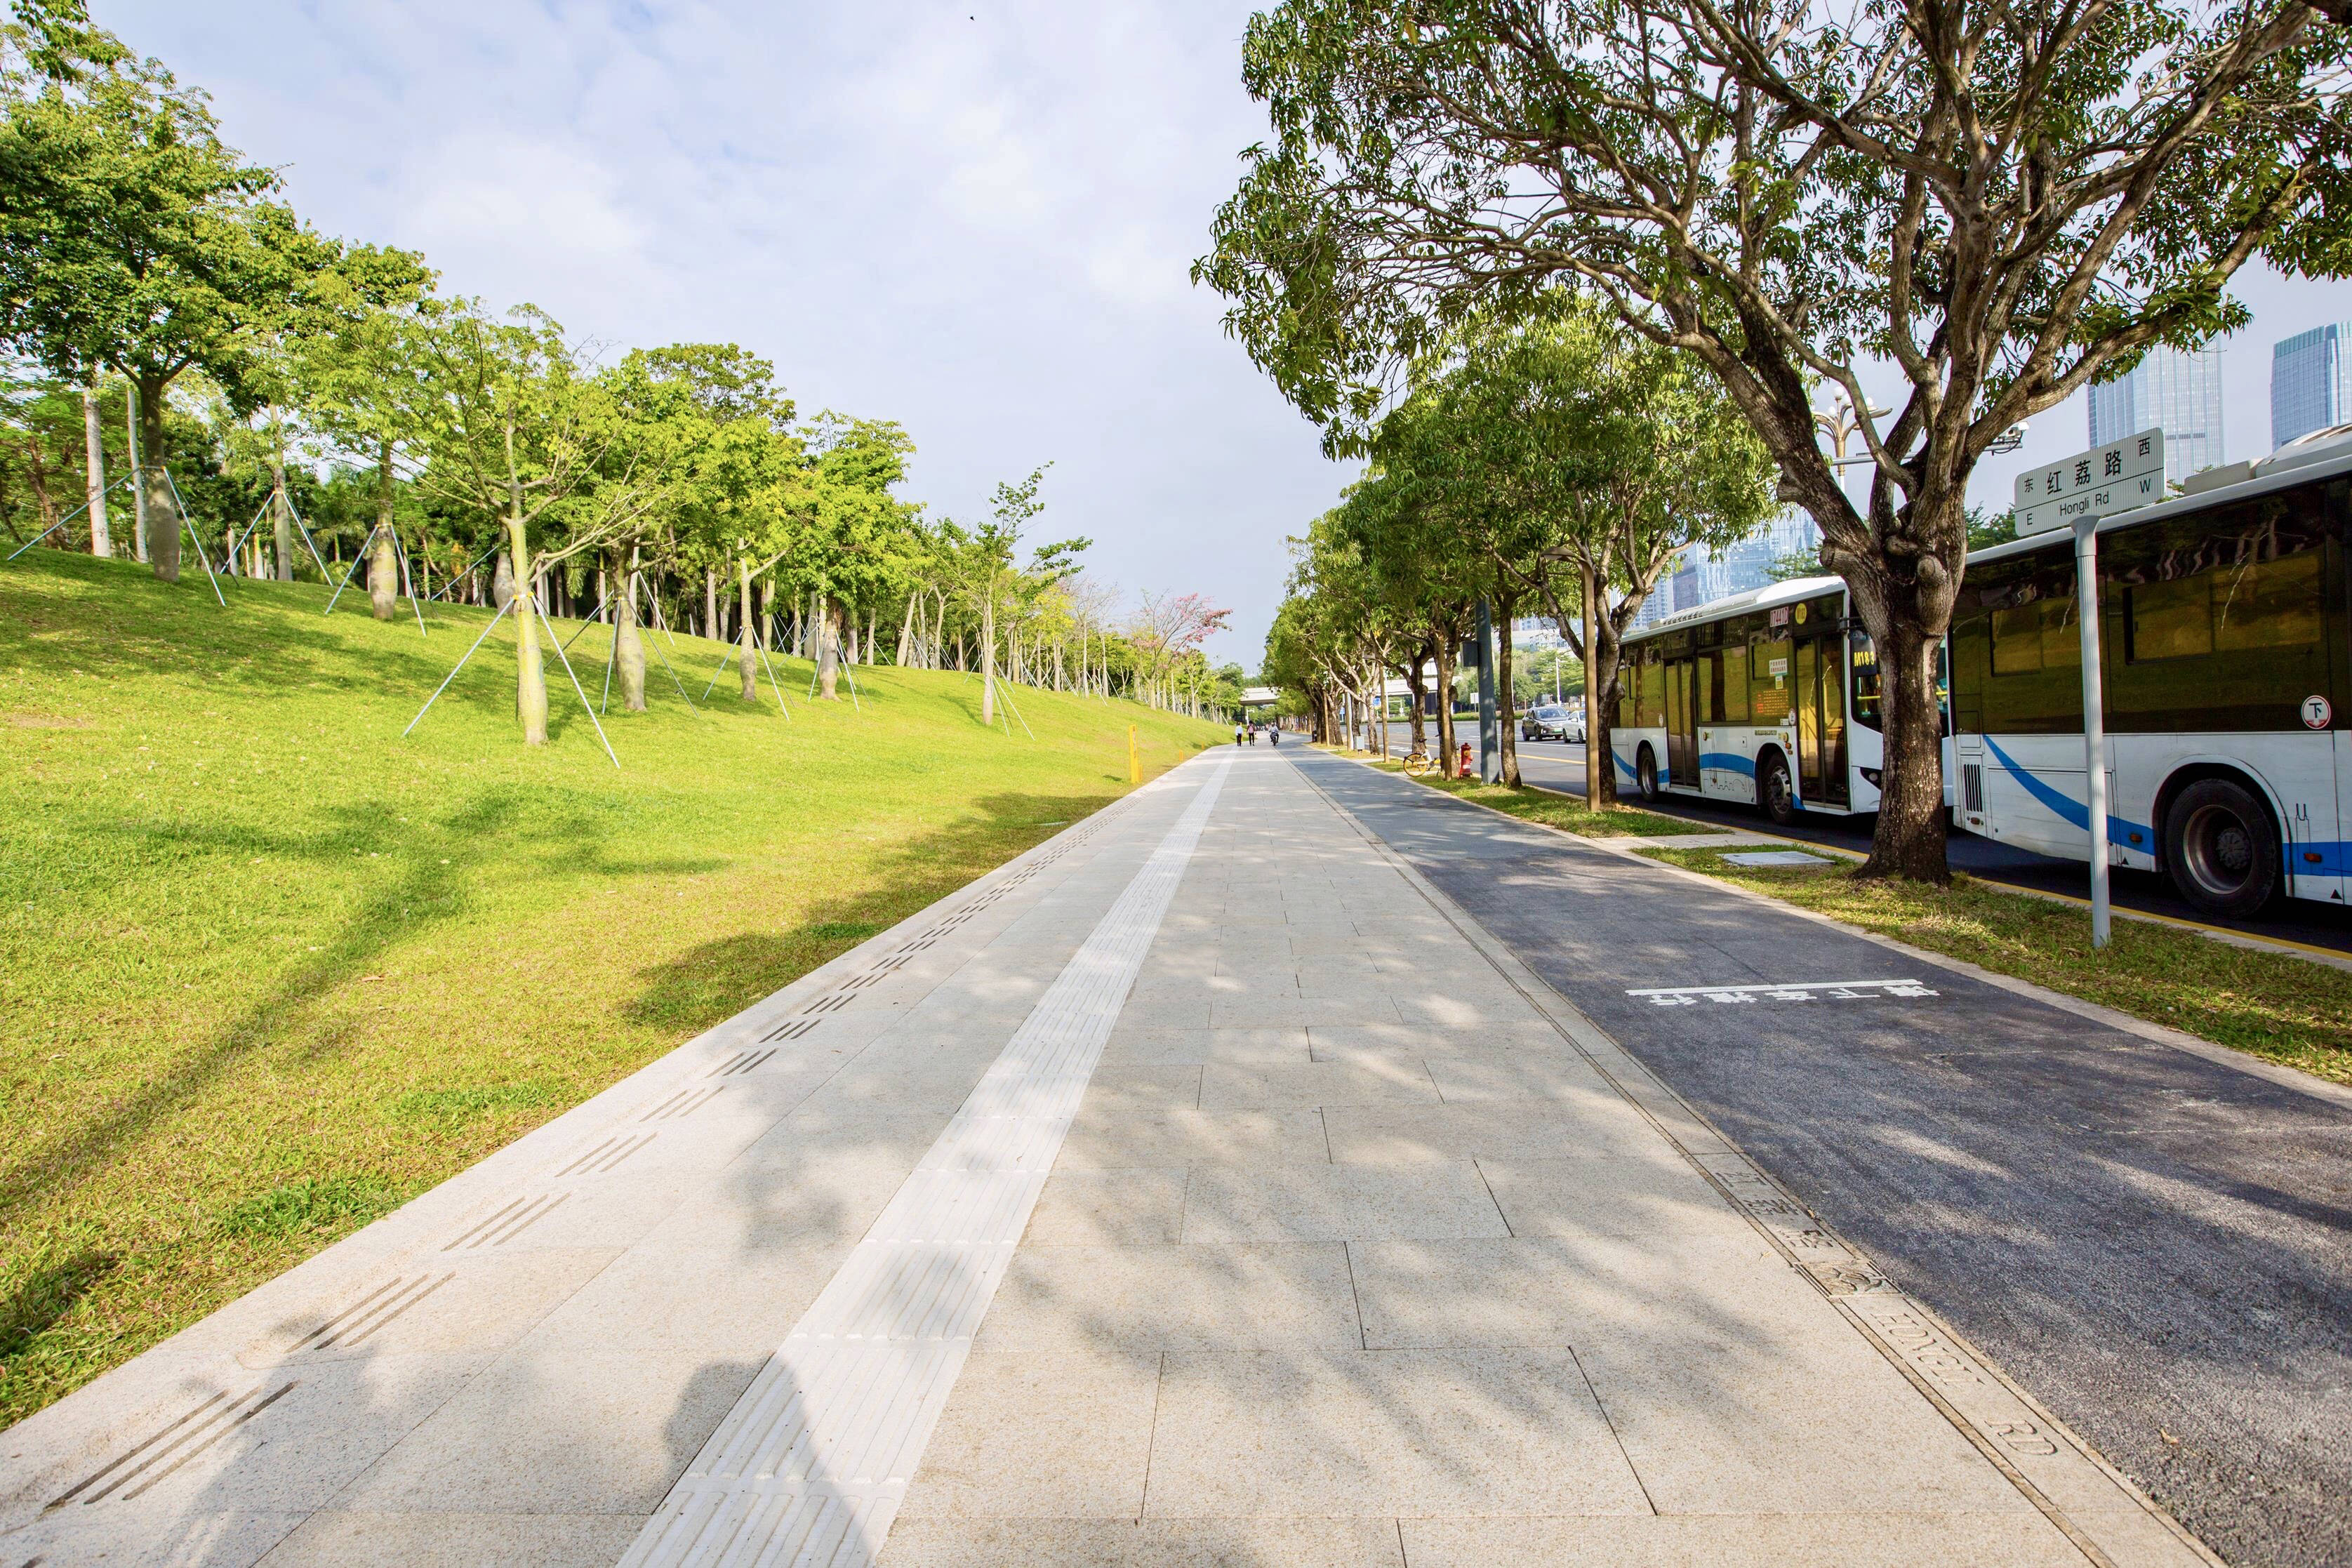 重组道路公共空间, 打造三线合一的慢行系统,展现生态优美的城市形象